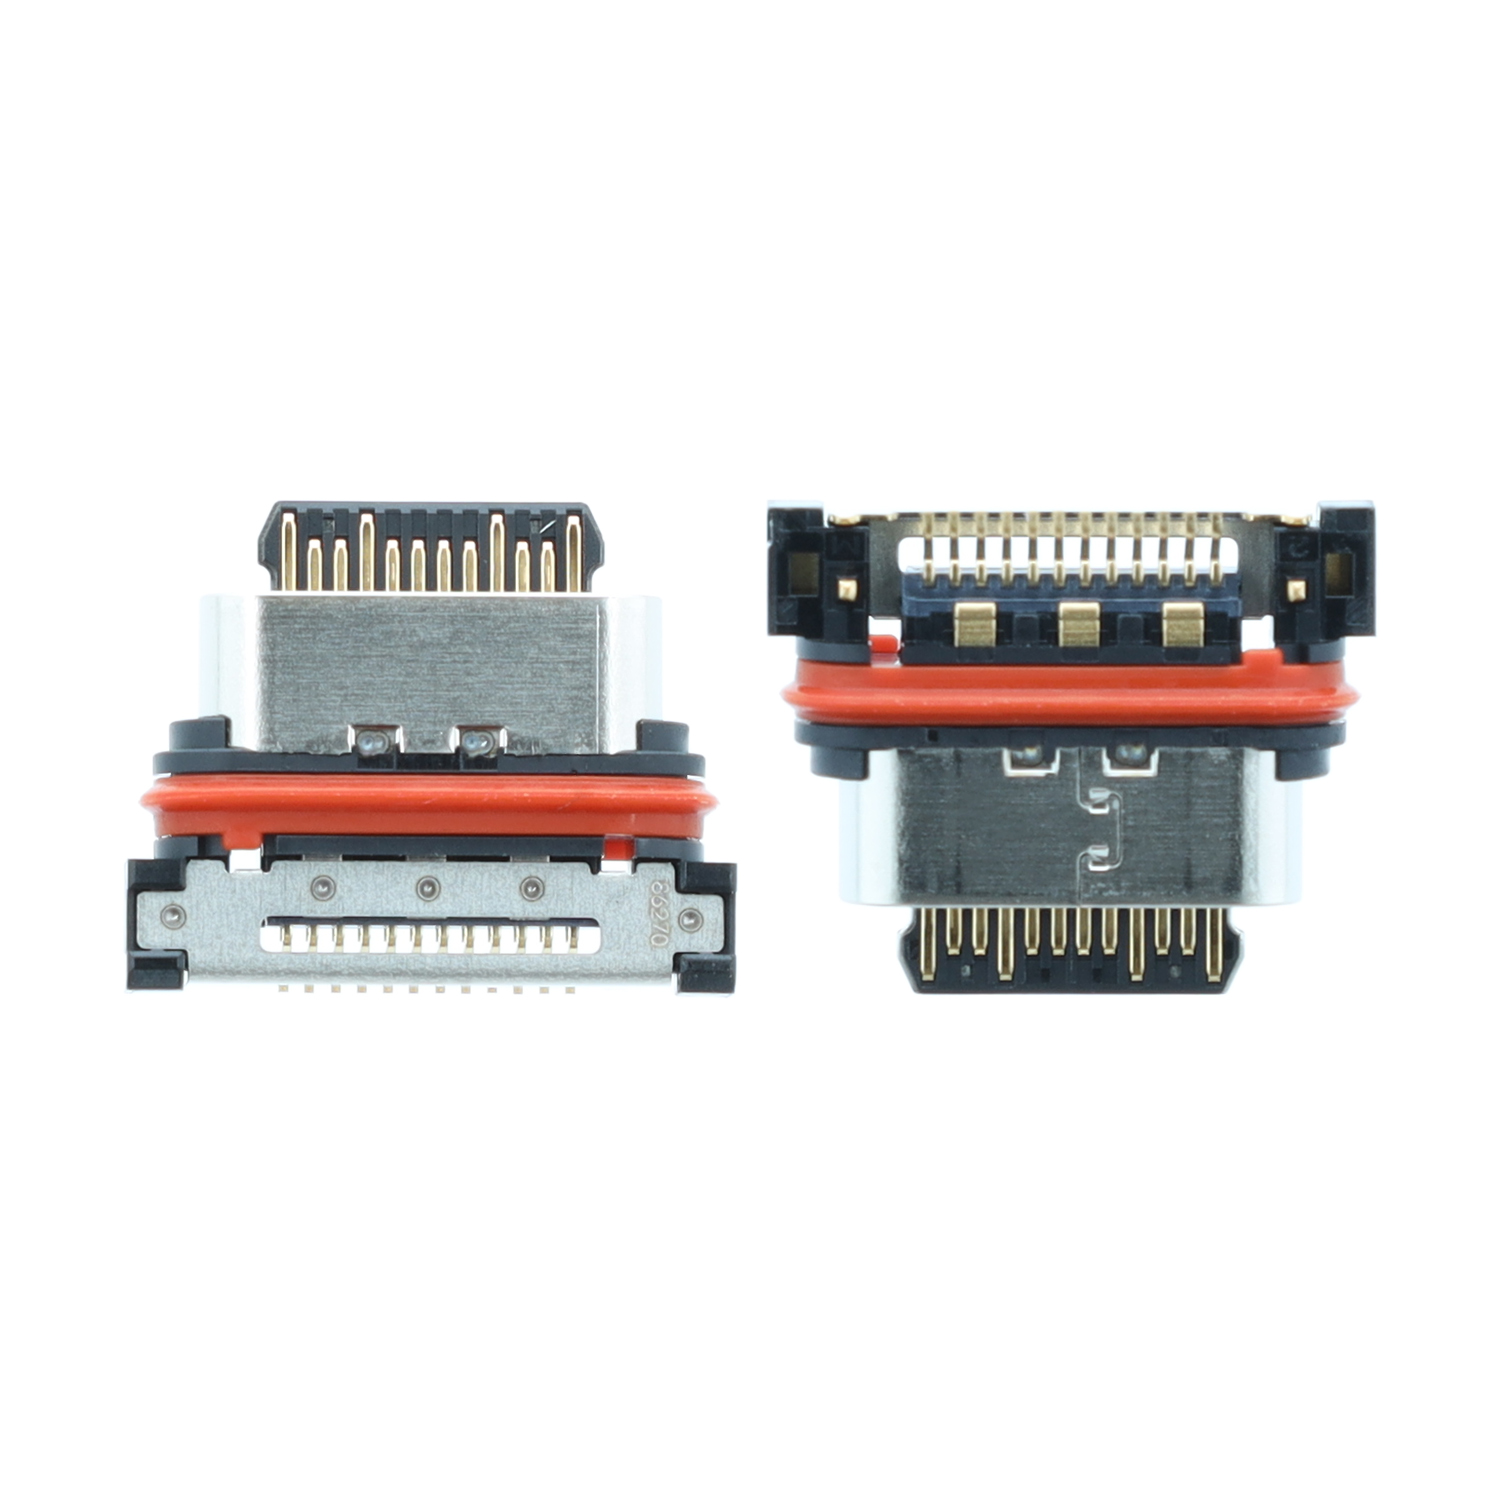 Dock Connector compatible to Sony Xperia 1 II / 1 III / 1 IV / 5 II / 5 III / 5 IV / 10 II